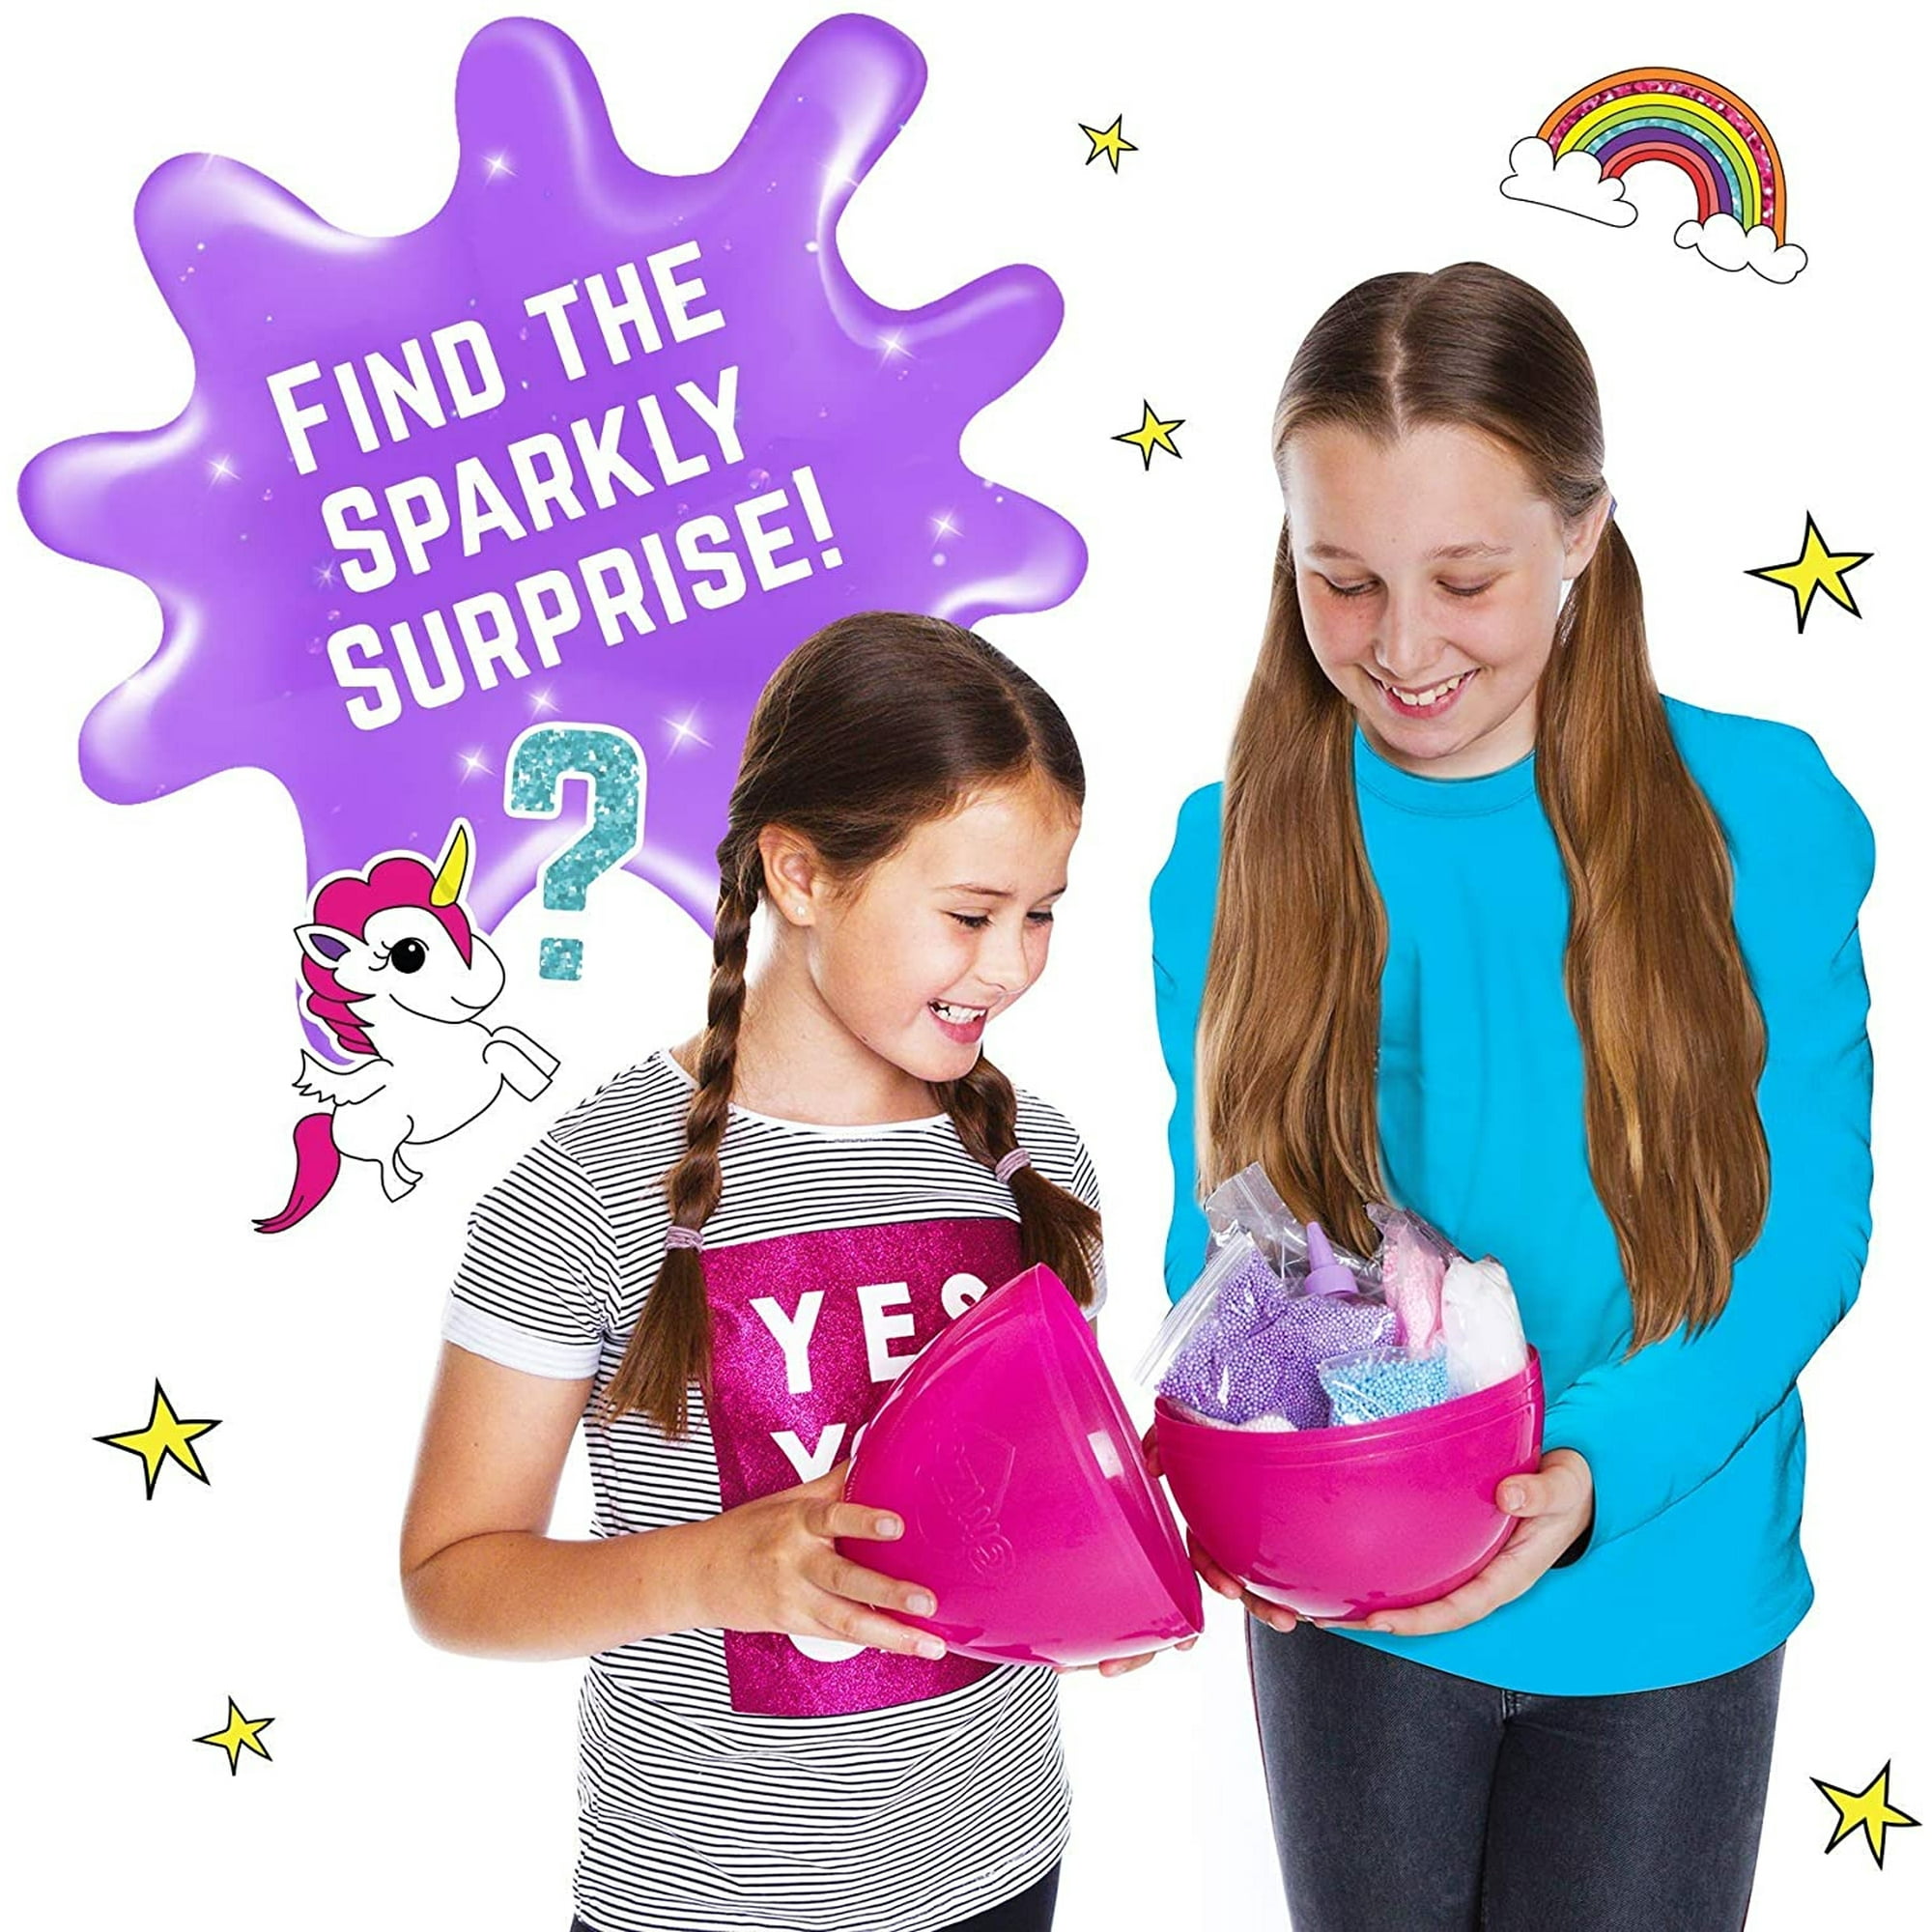 GirlZone Egg Surprise Galaxy Slime Kit para niñas, 41 piezas para